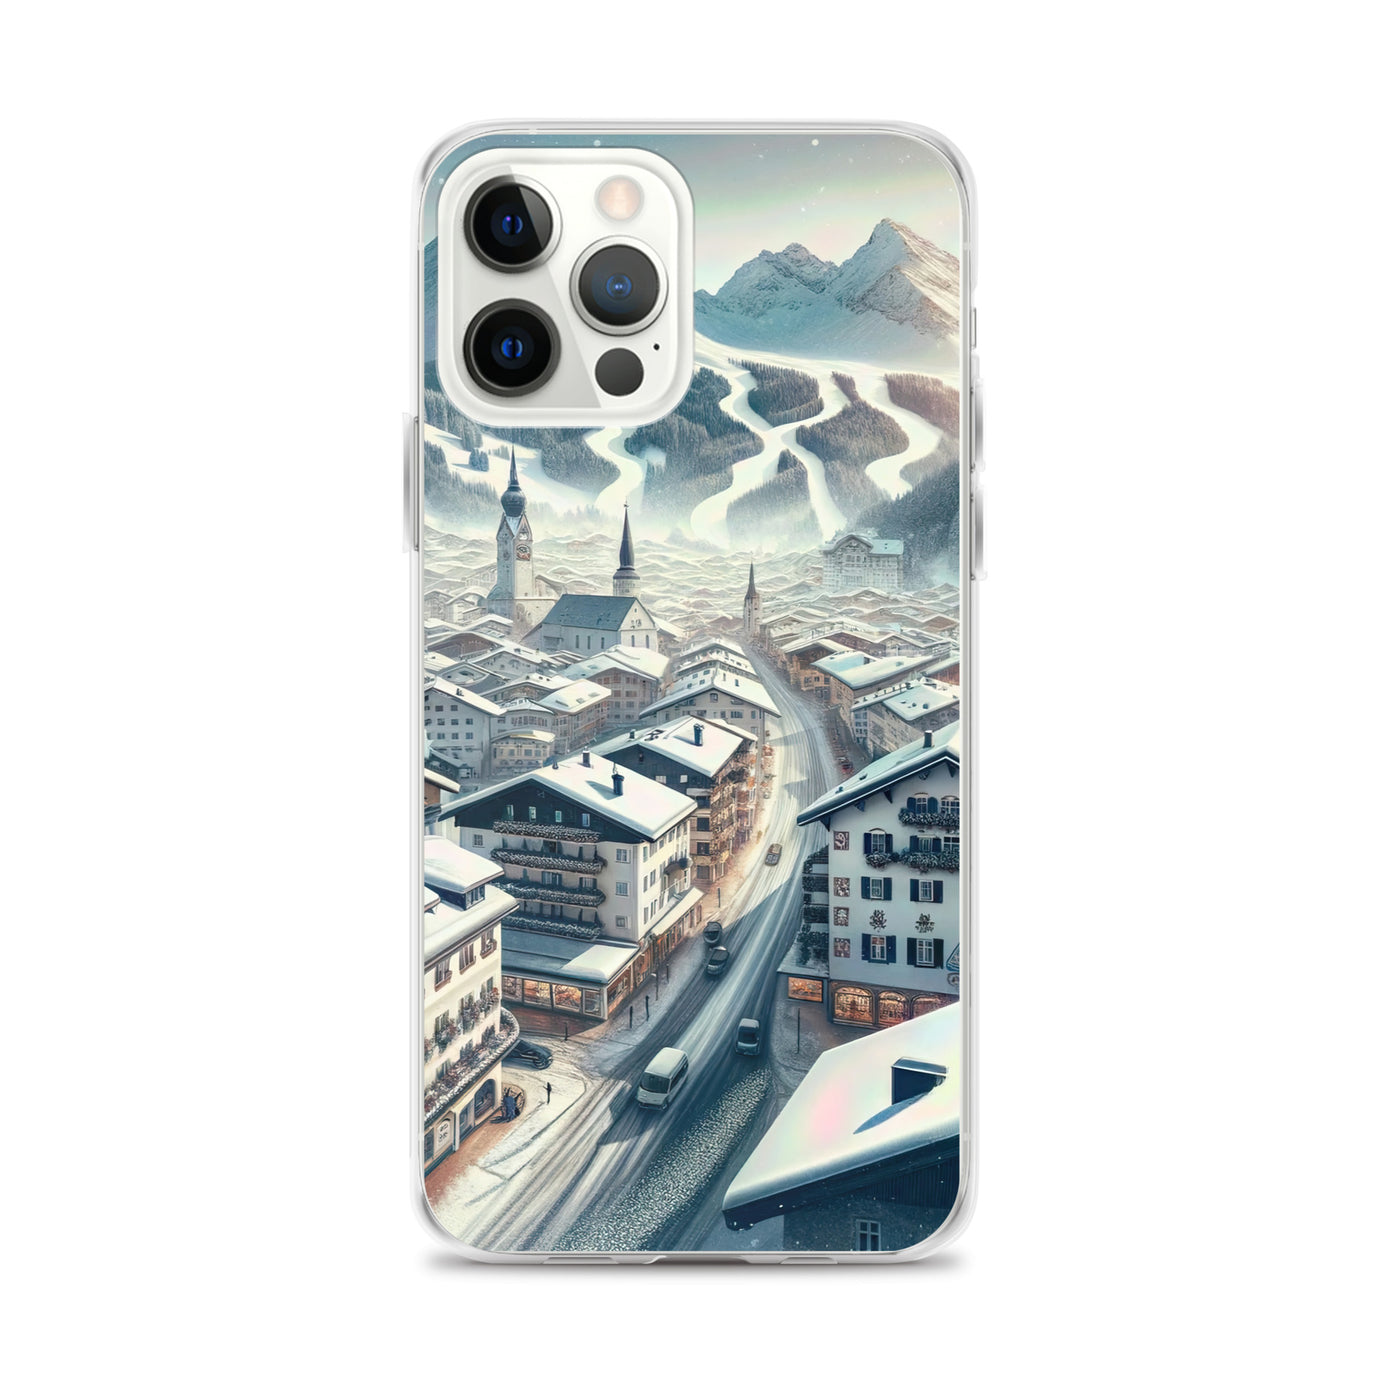 Winter in Kitzbühel: Digitale Malerei von schneebedeckten Dächern - iPhone Schutzhülle (durchsichtig) berge xxx yyy zzz iPhone 12 Pro Max